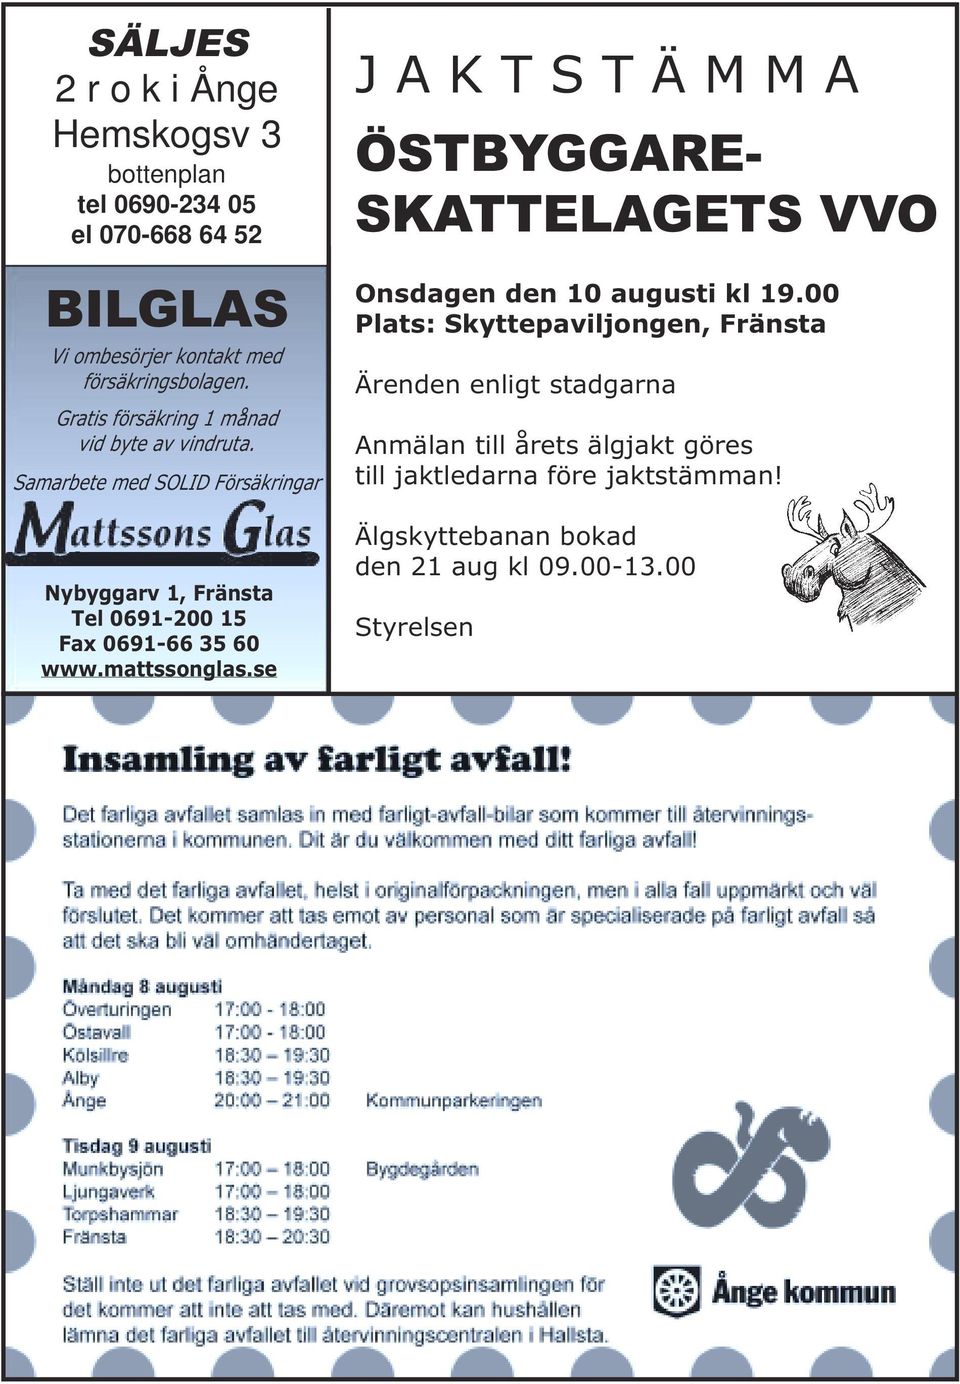 Samarbete med SOLID Försäkringar Nybyggarv 1, Fränsta Tel 0691-200 15 Fax 0691-66 35 60 www.mattssonglas.